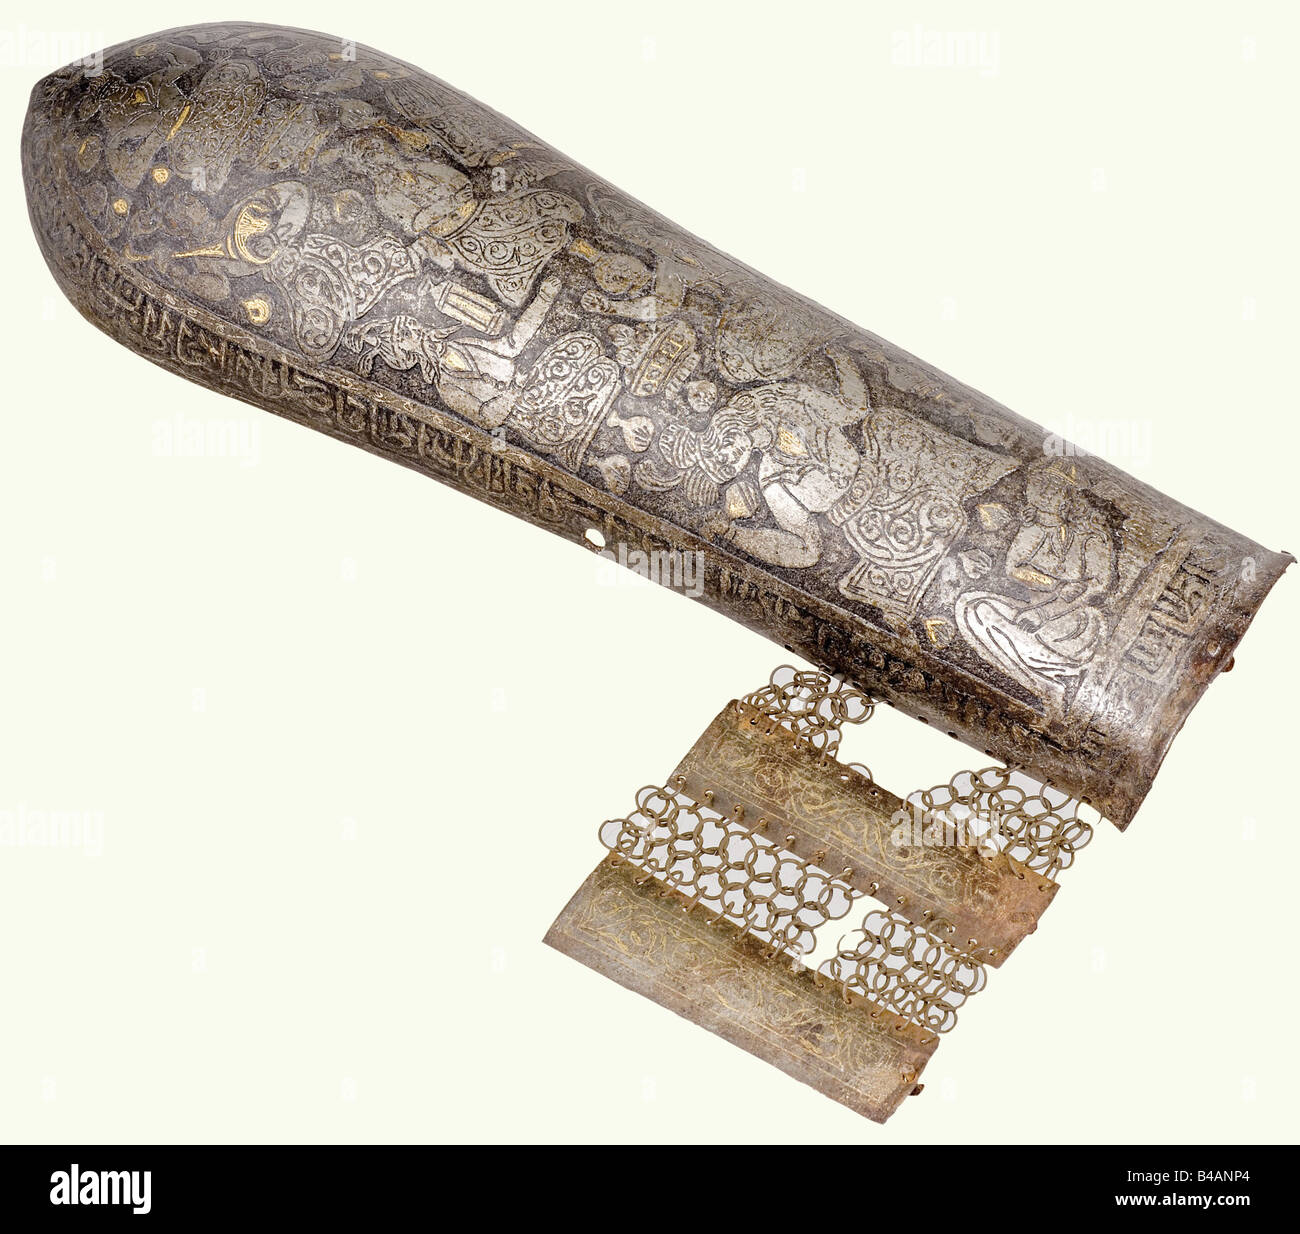 Una banda kulah khud e bazu dorata (protezione dell'avambraccio), persiano,  19th secolo. Teschio in ferro forgiato in un unico pezzo con la superficie  completamente coperta con decorazione figurativa umana incisa con resti